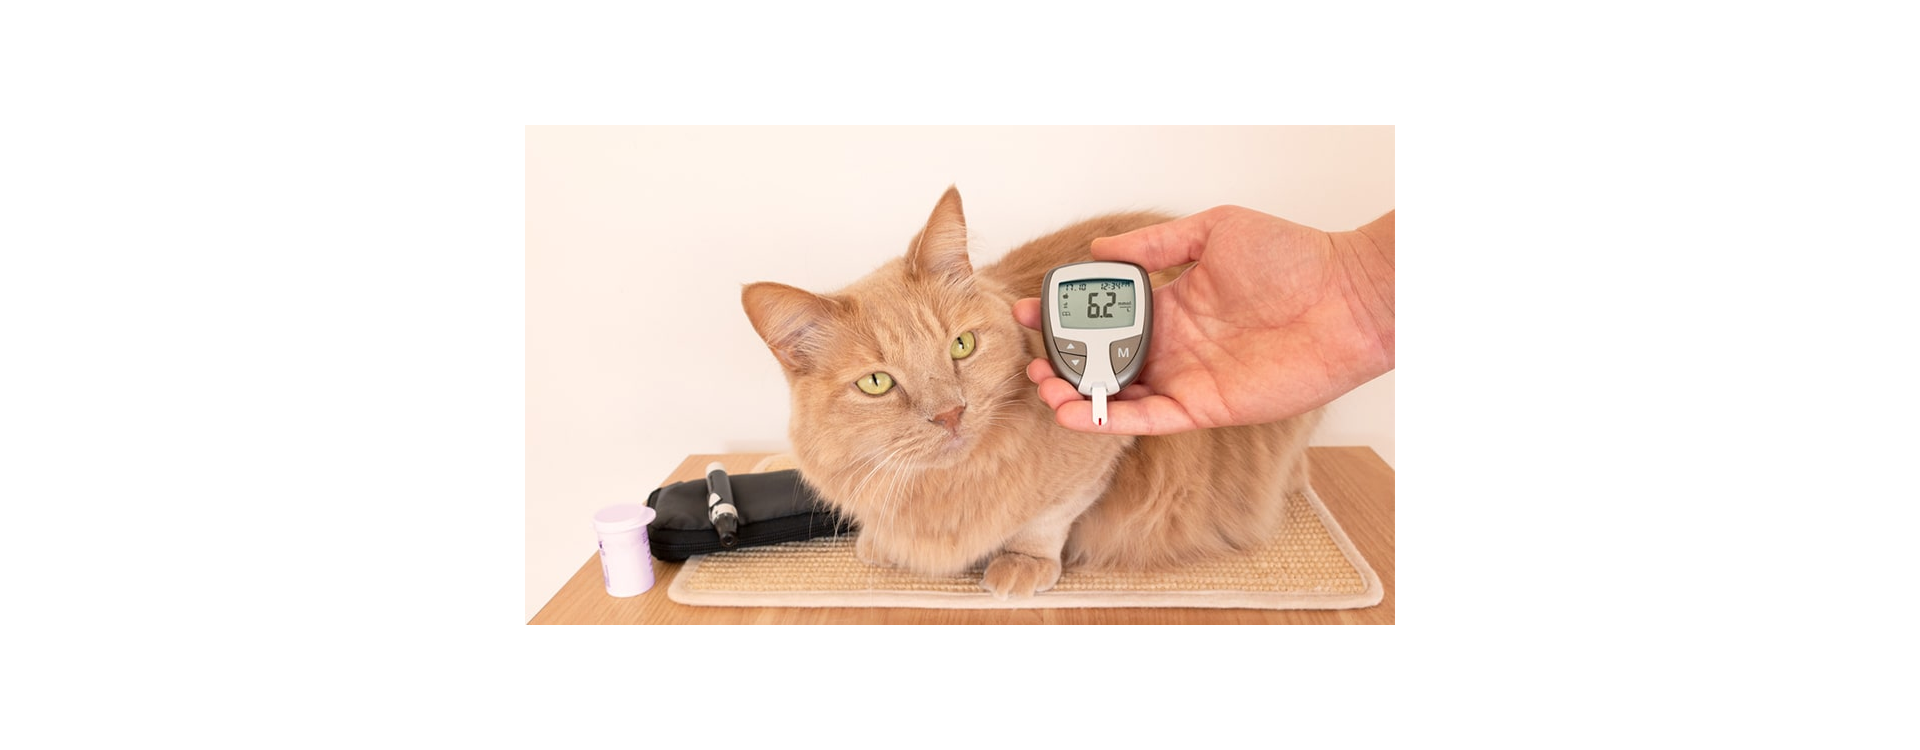 9 σημάδια διαβήτη στη γάτα σου που δεν πρέπει να αγνοήσεις